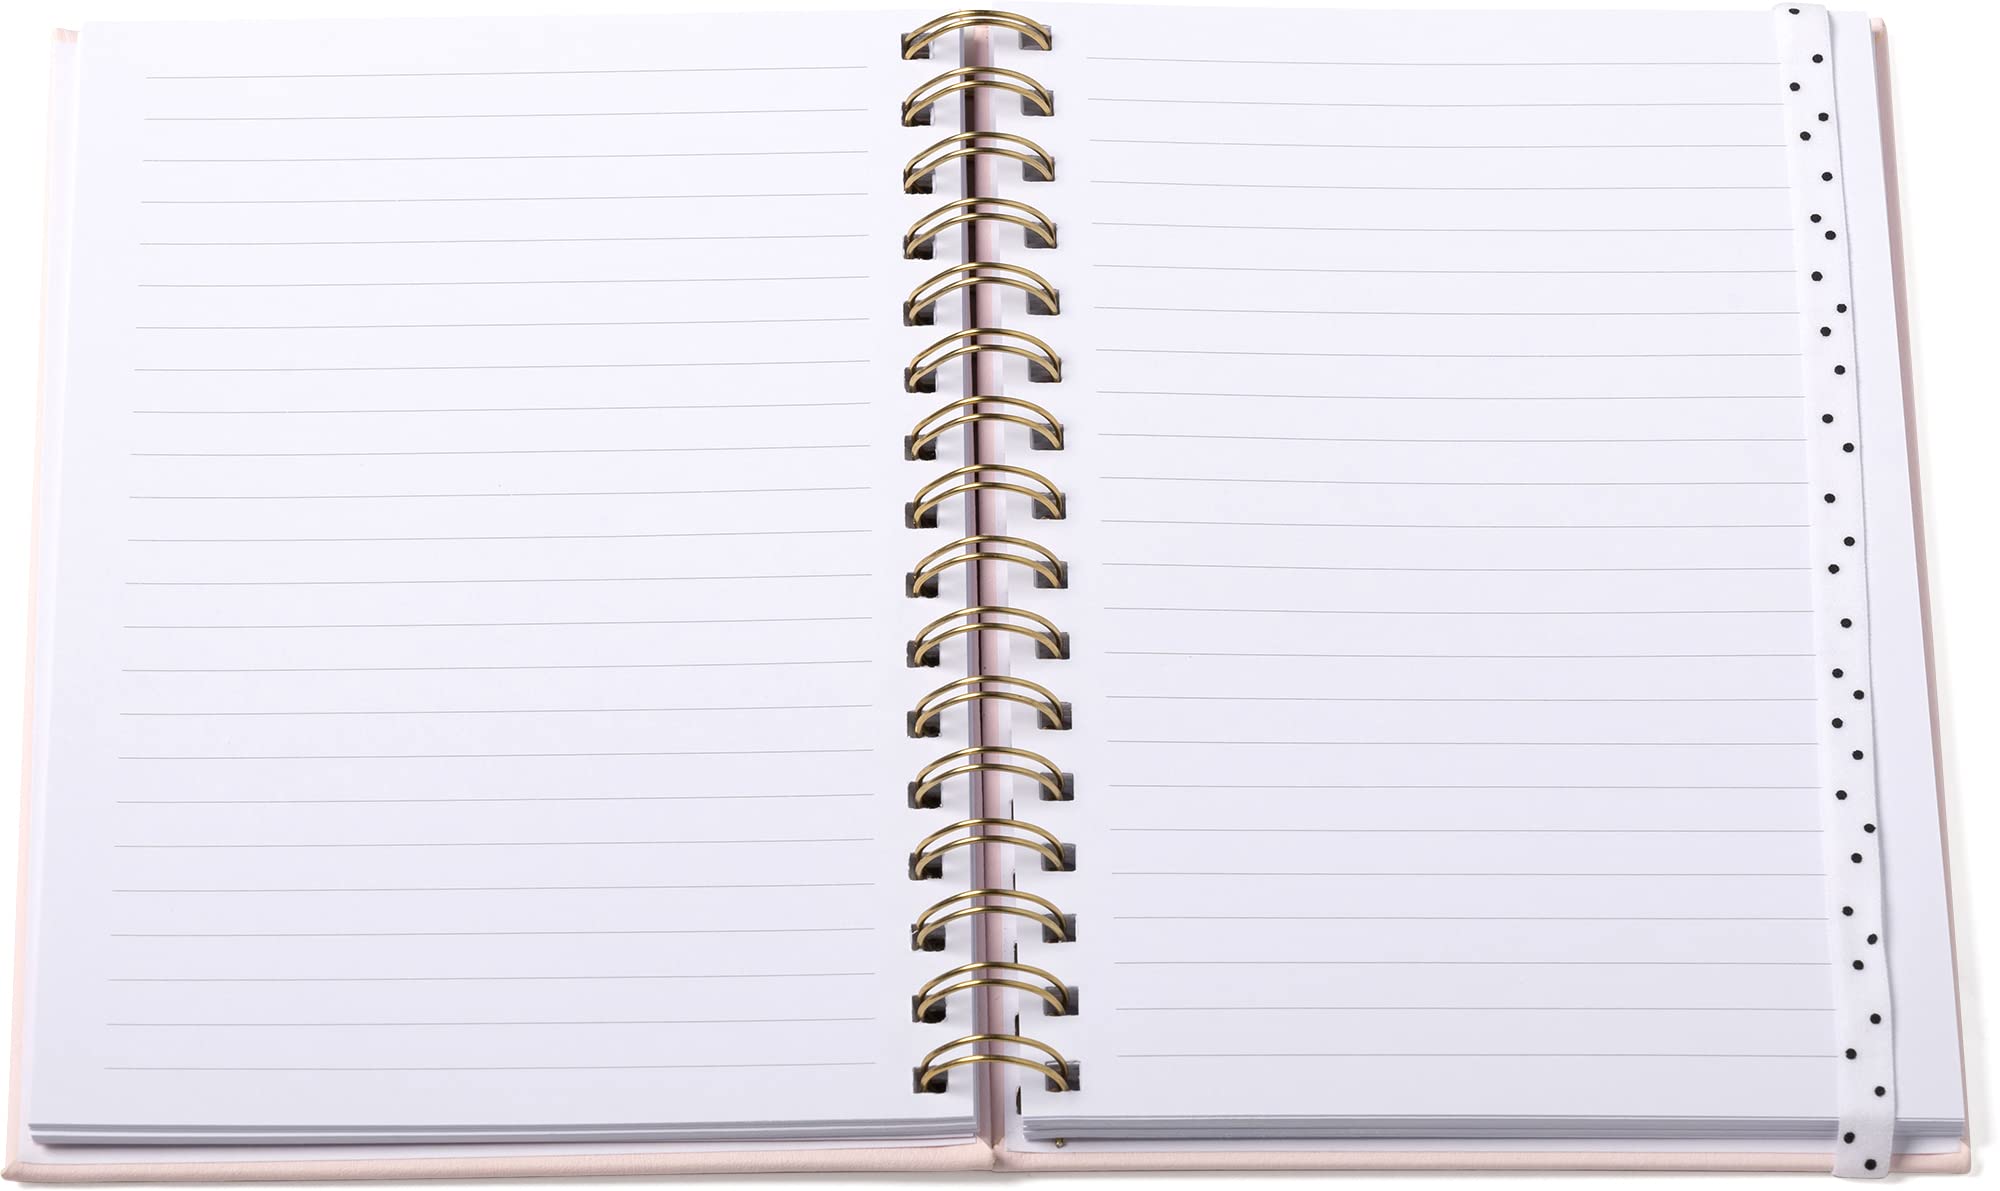 6x8 wirebound hard cover notebook